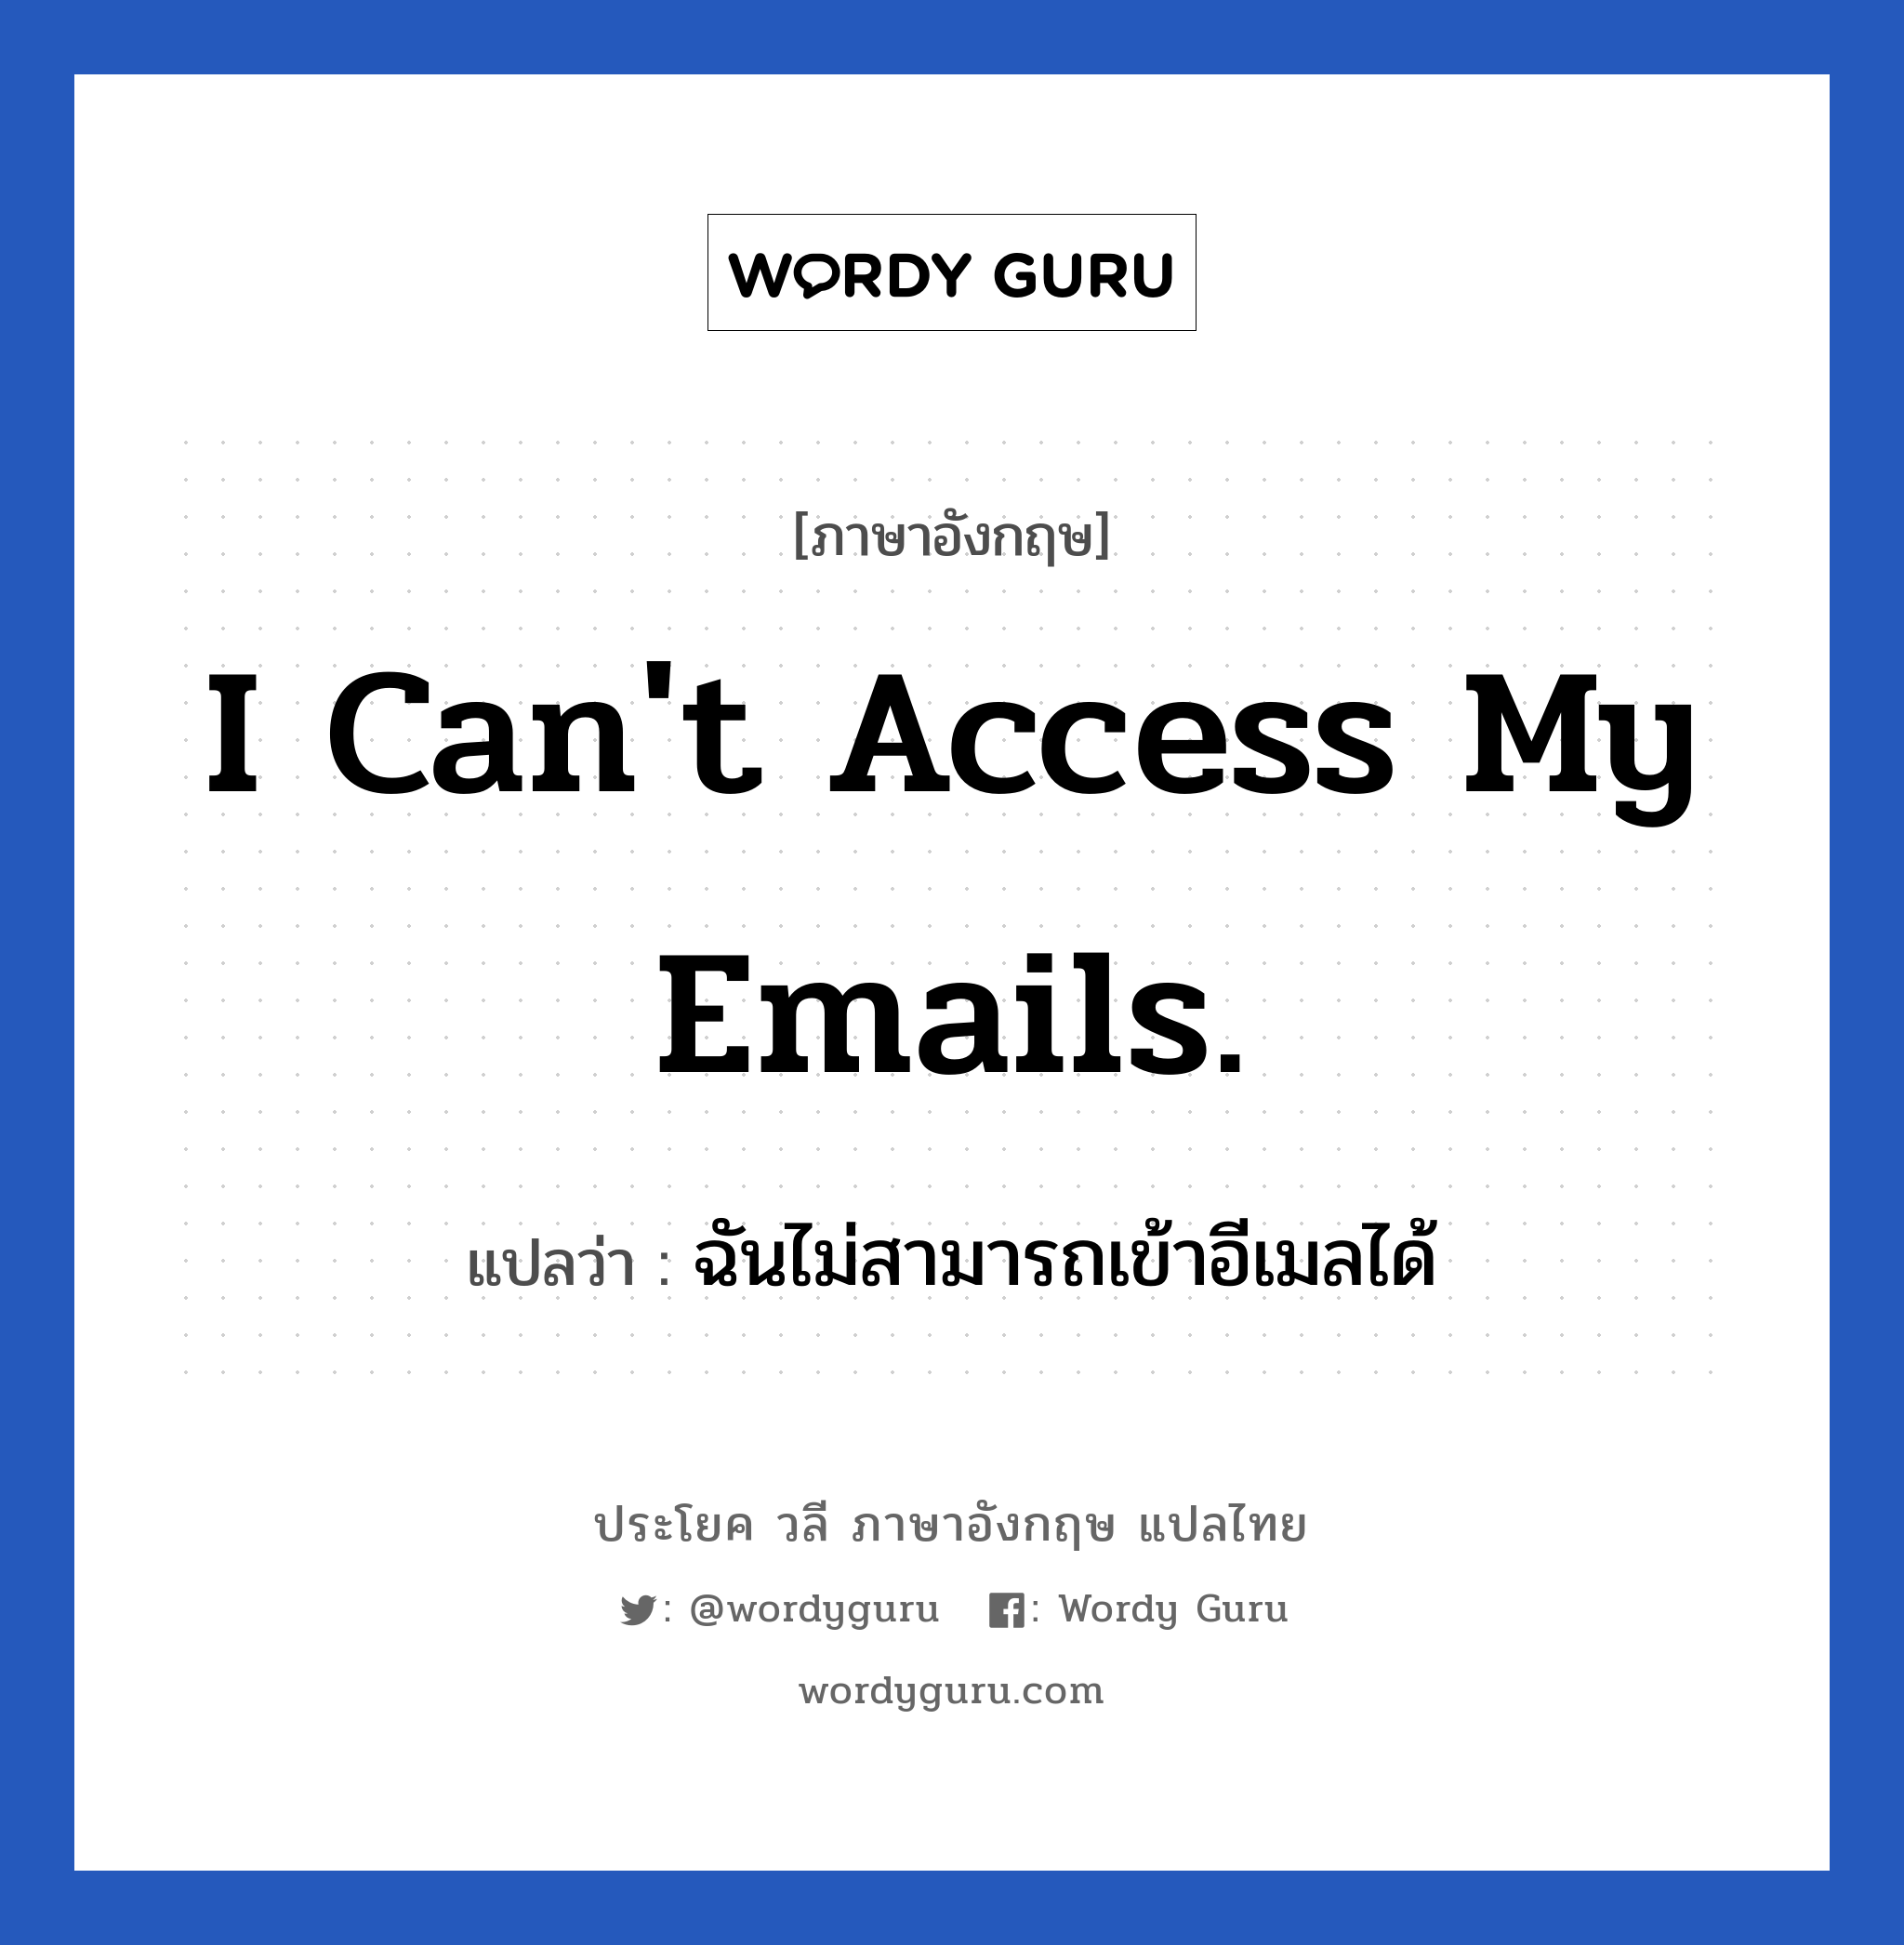 I can't access my emails. แปลว่า?, วลีภาษาอังกฤษ I can't access my emails. แปลว่า ฉันไม่สามารถเข้าอีเมลได้